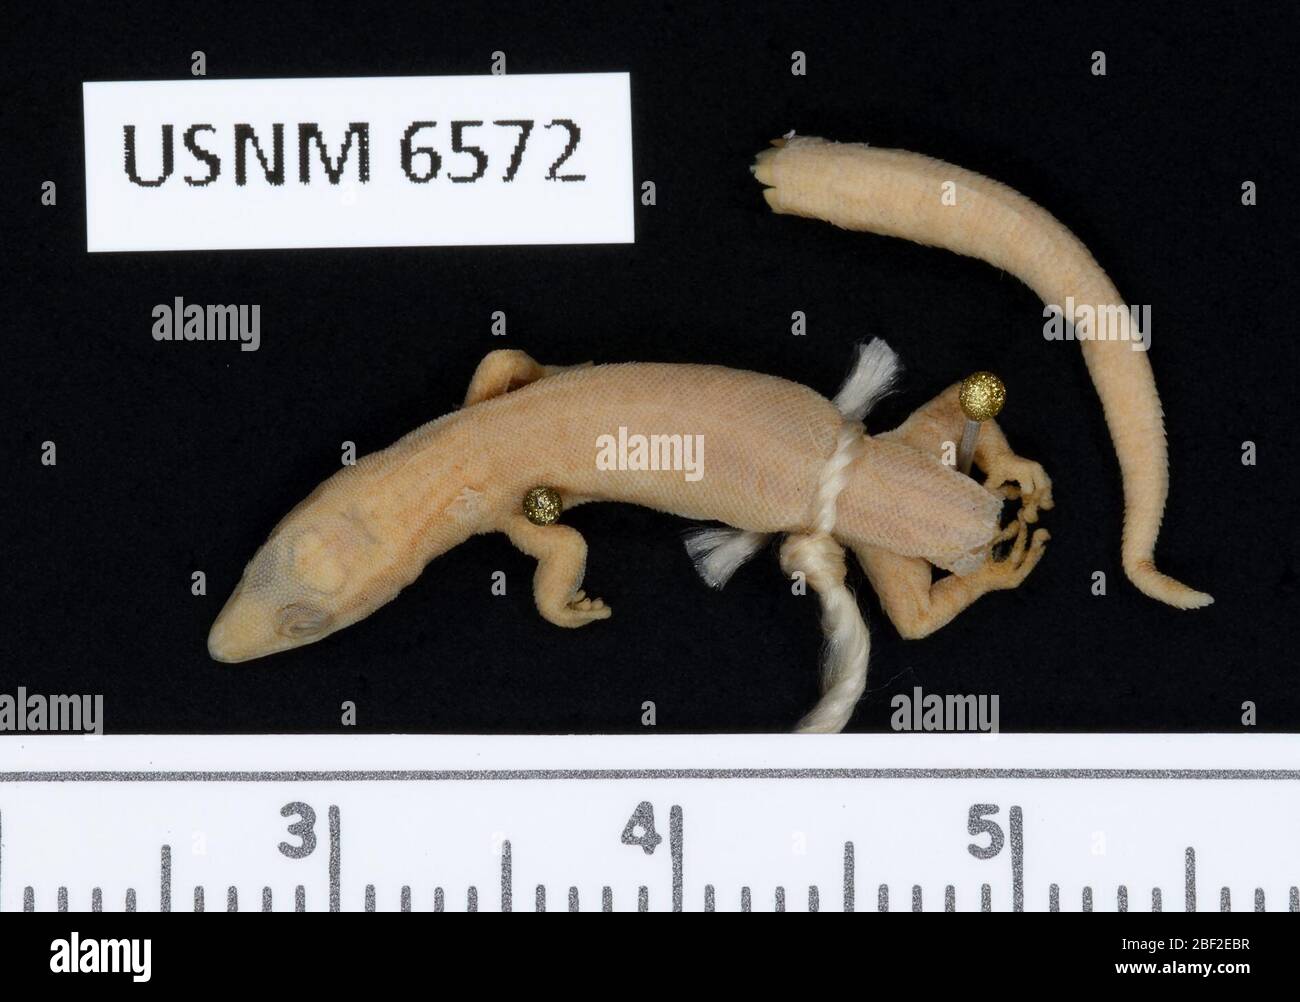 Sphaerodactylus glaucus. 29 Sep 20151 Stock Photo